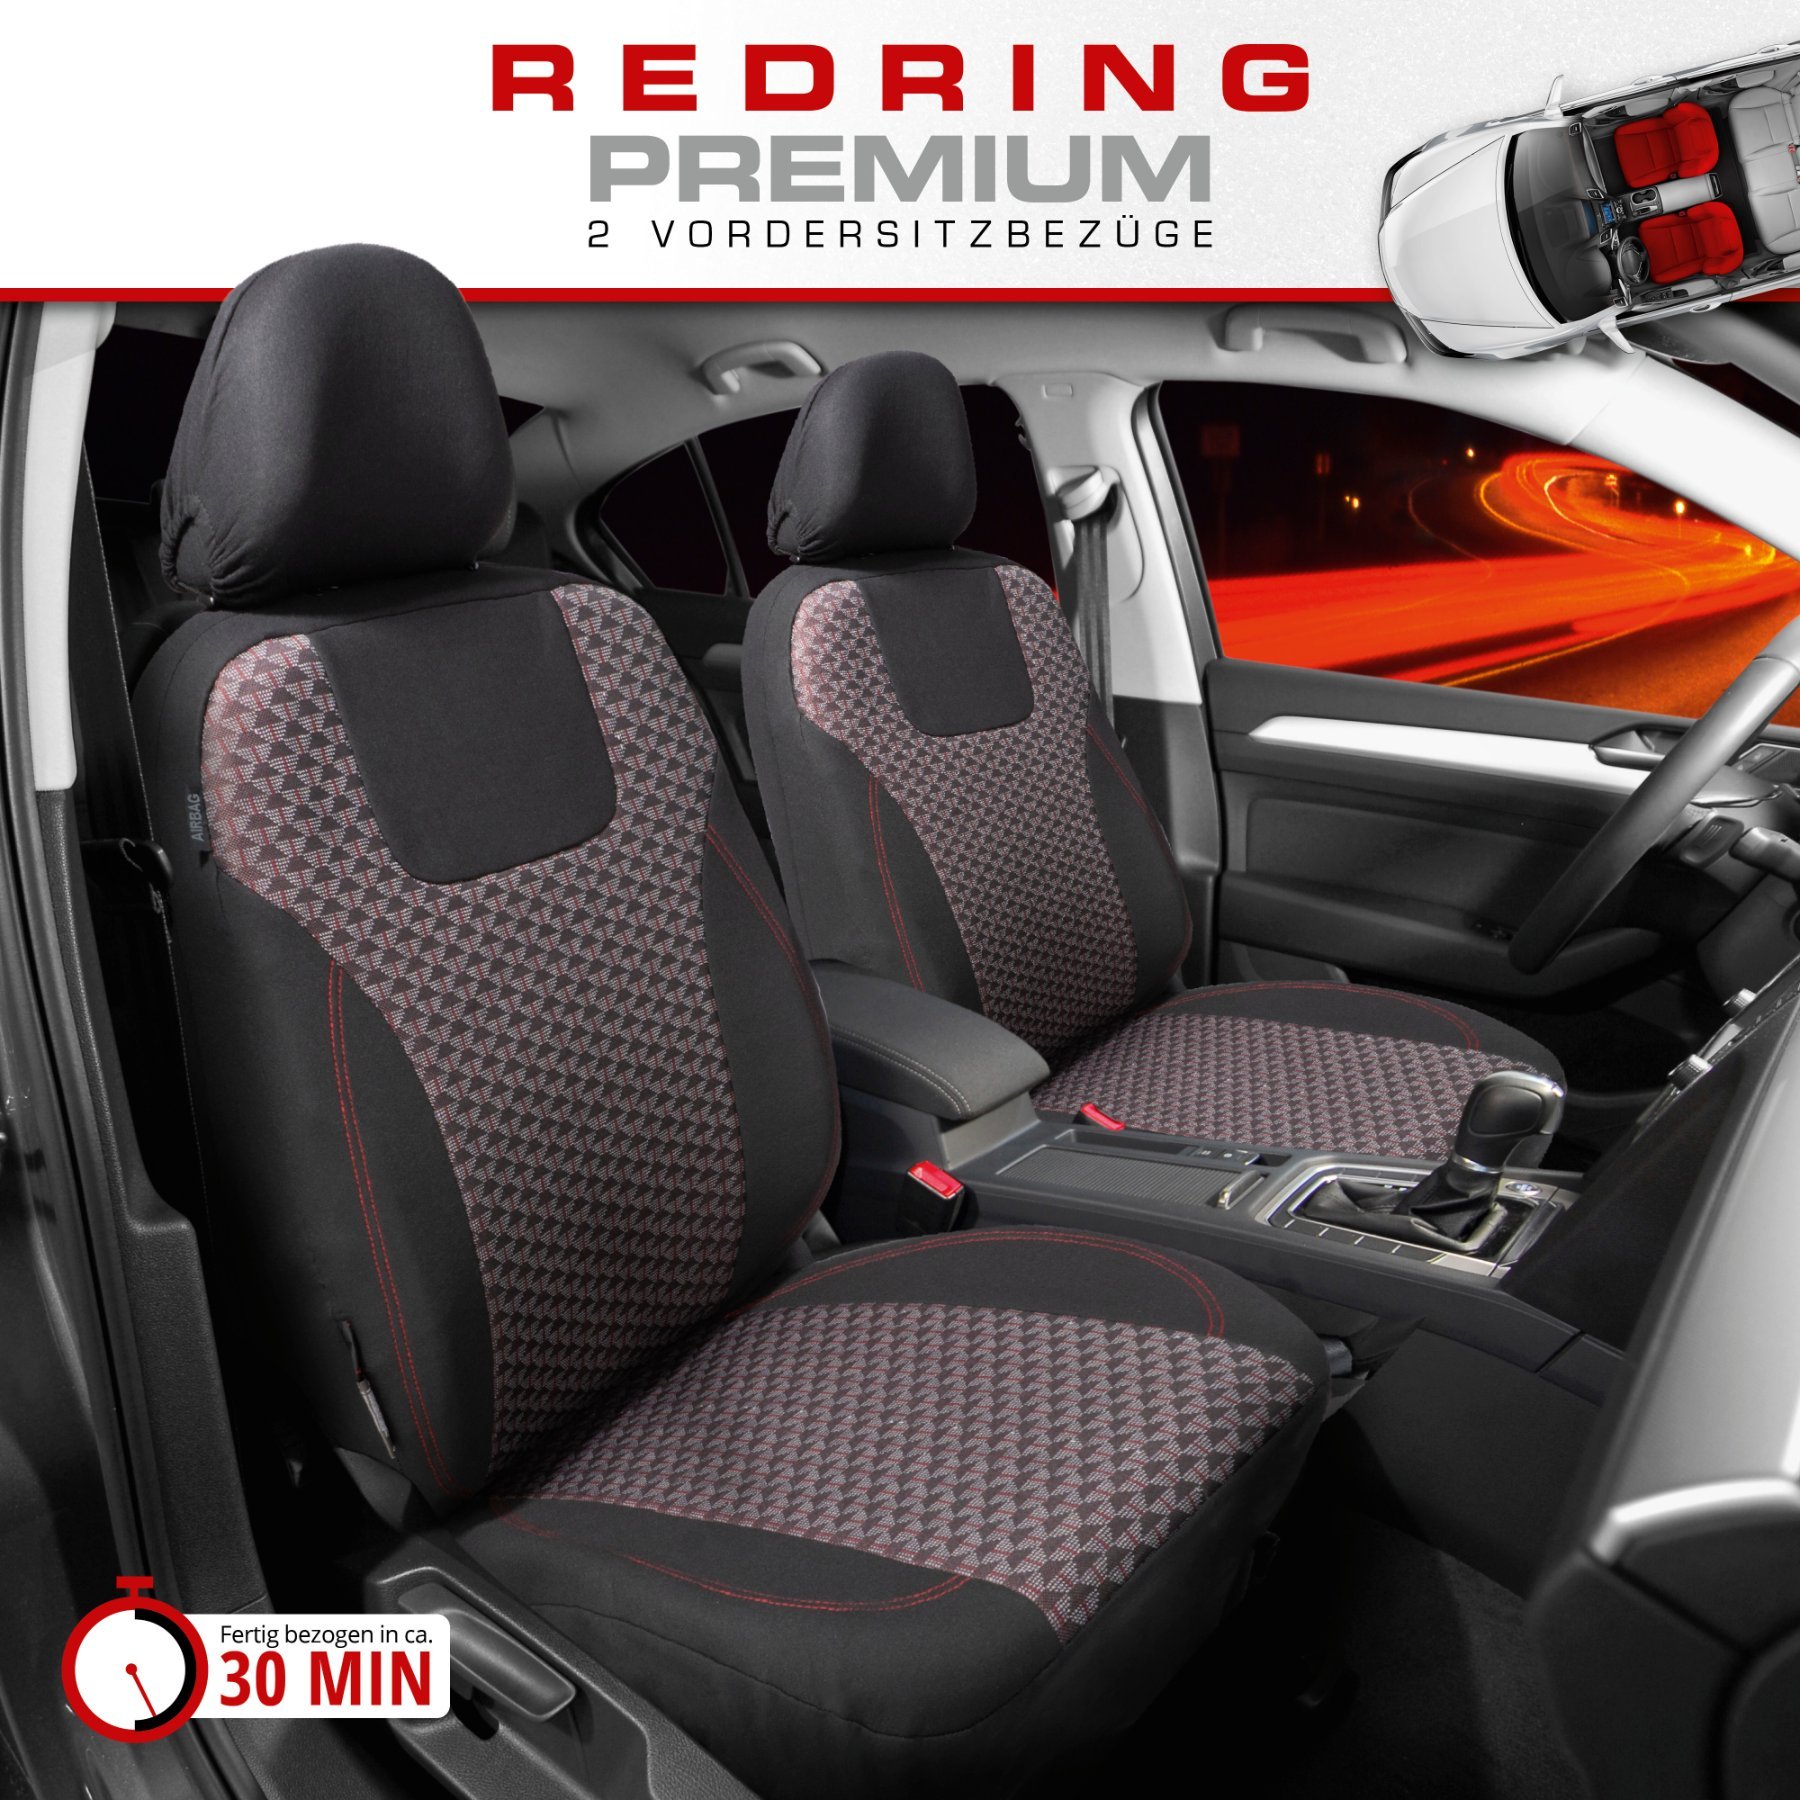 Autositzbezug ZIPP-IT Premium Redring, PKW-Schonbezüge für 2 Vordersitze mit Reißverschluss-System schwarz/rot